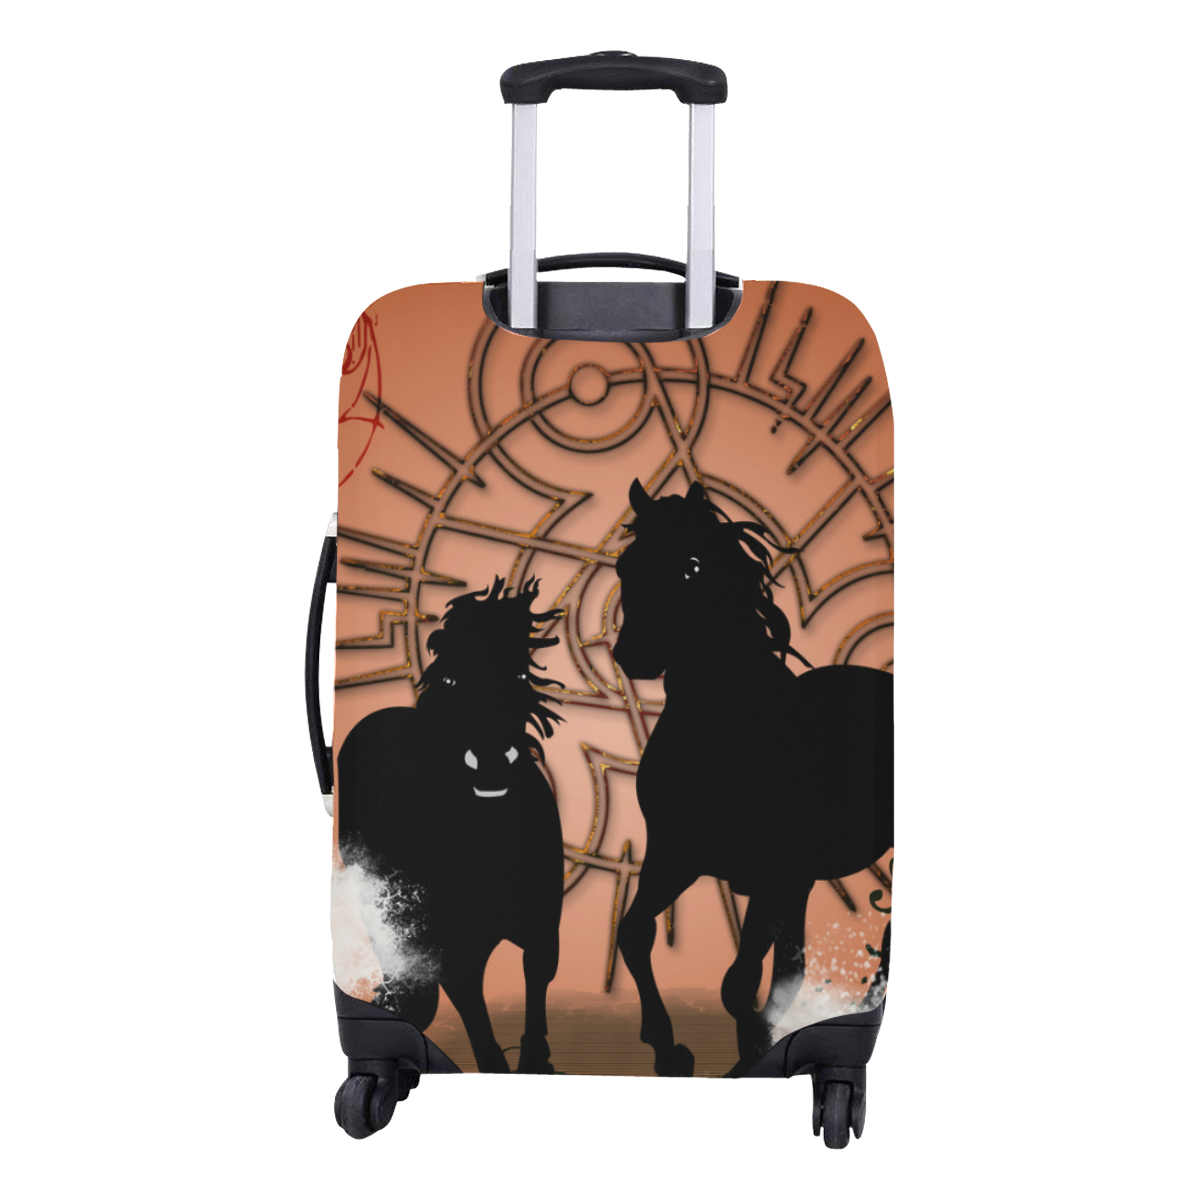 Black horse silhouette Luggage Cover/Medium 22"-25"